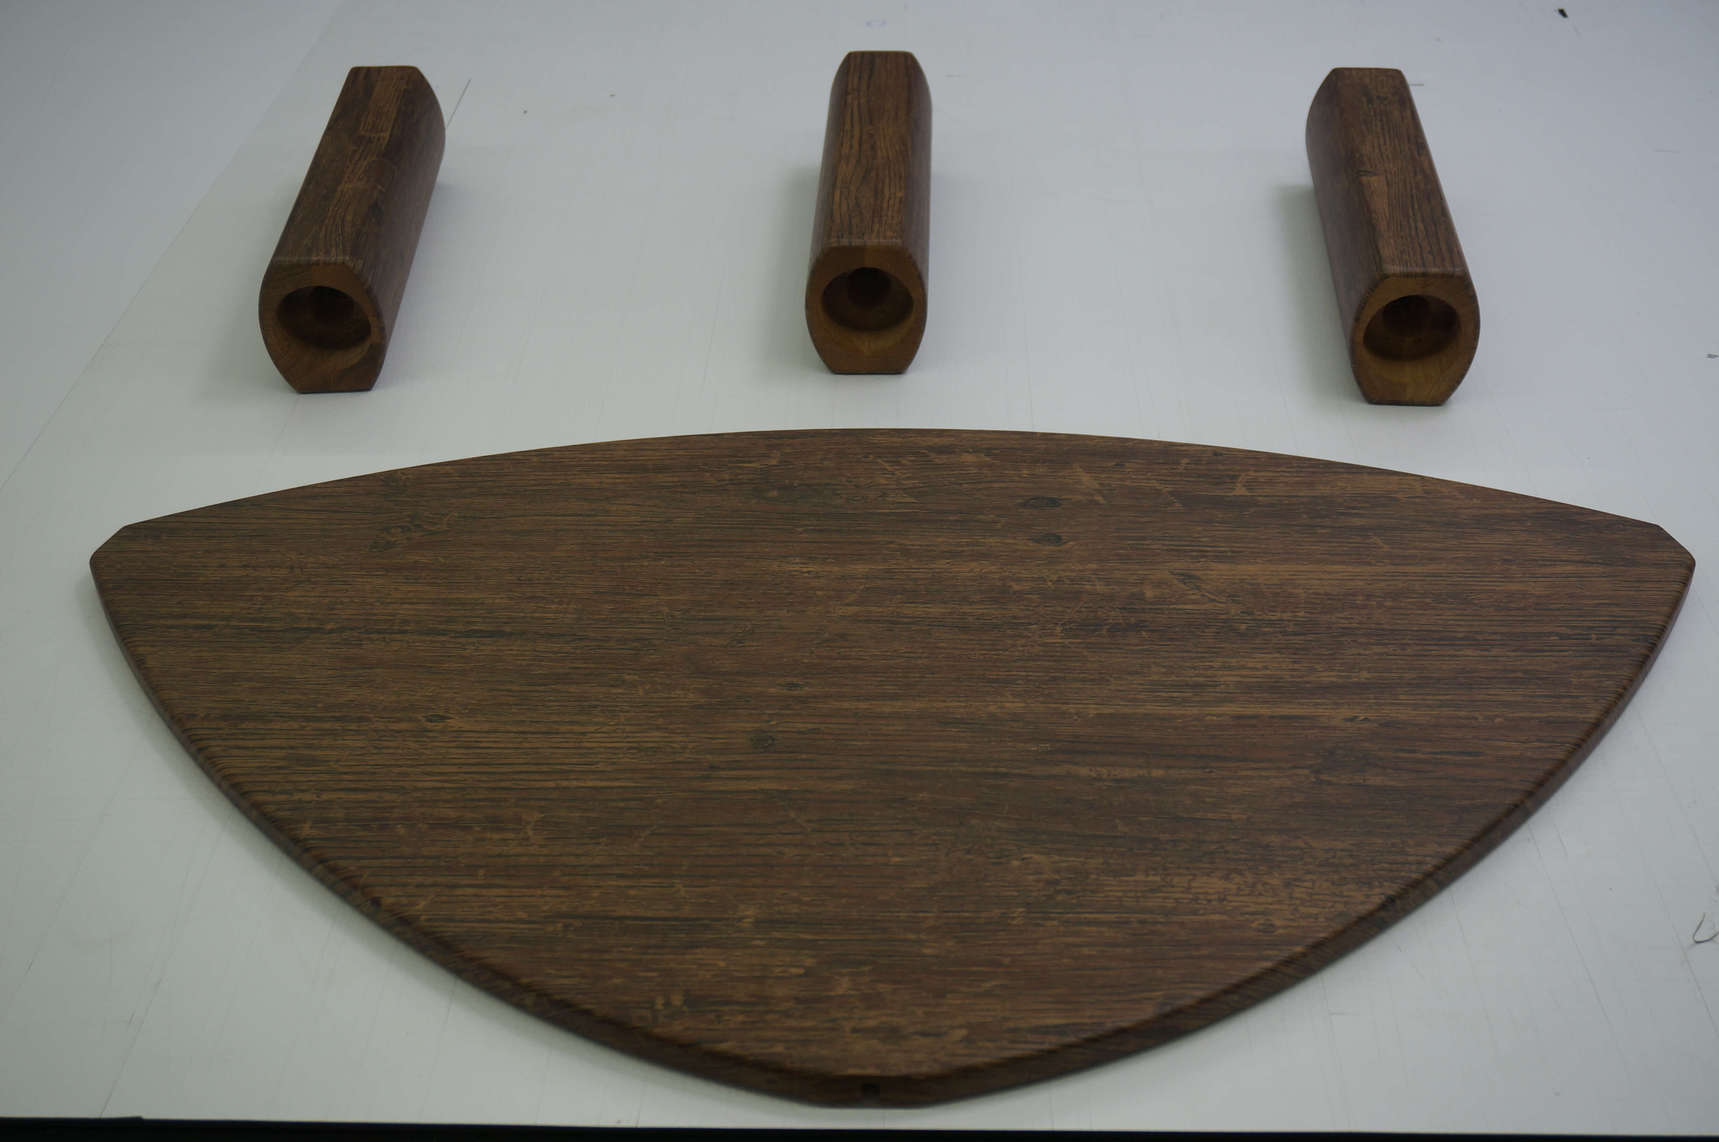 resimdo Wohnzimmer Beistelltisch Holz Folie W671  Rustic Indoor Plank Beispiel ergebnis